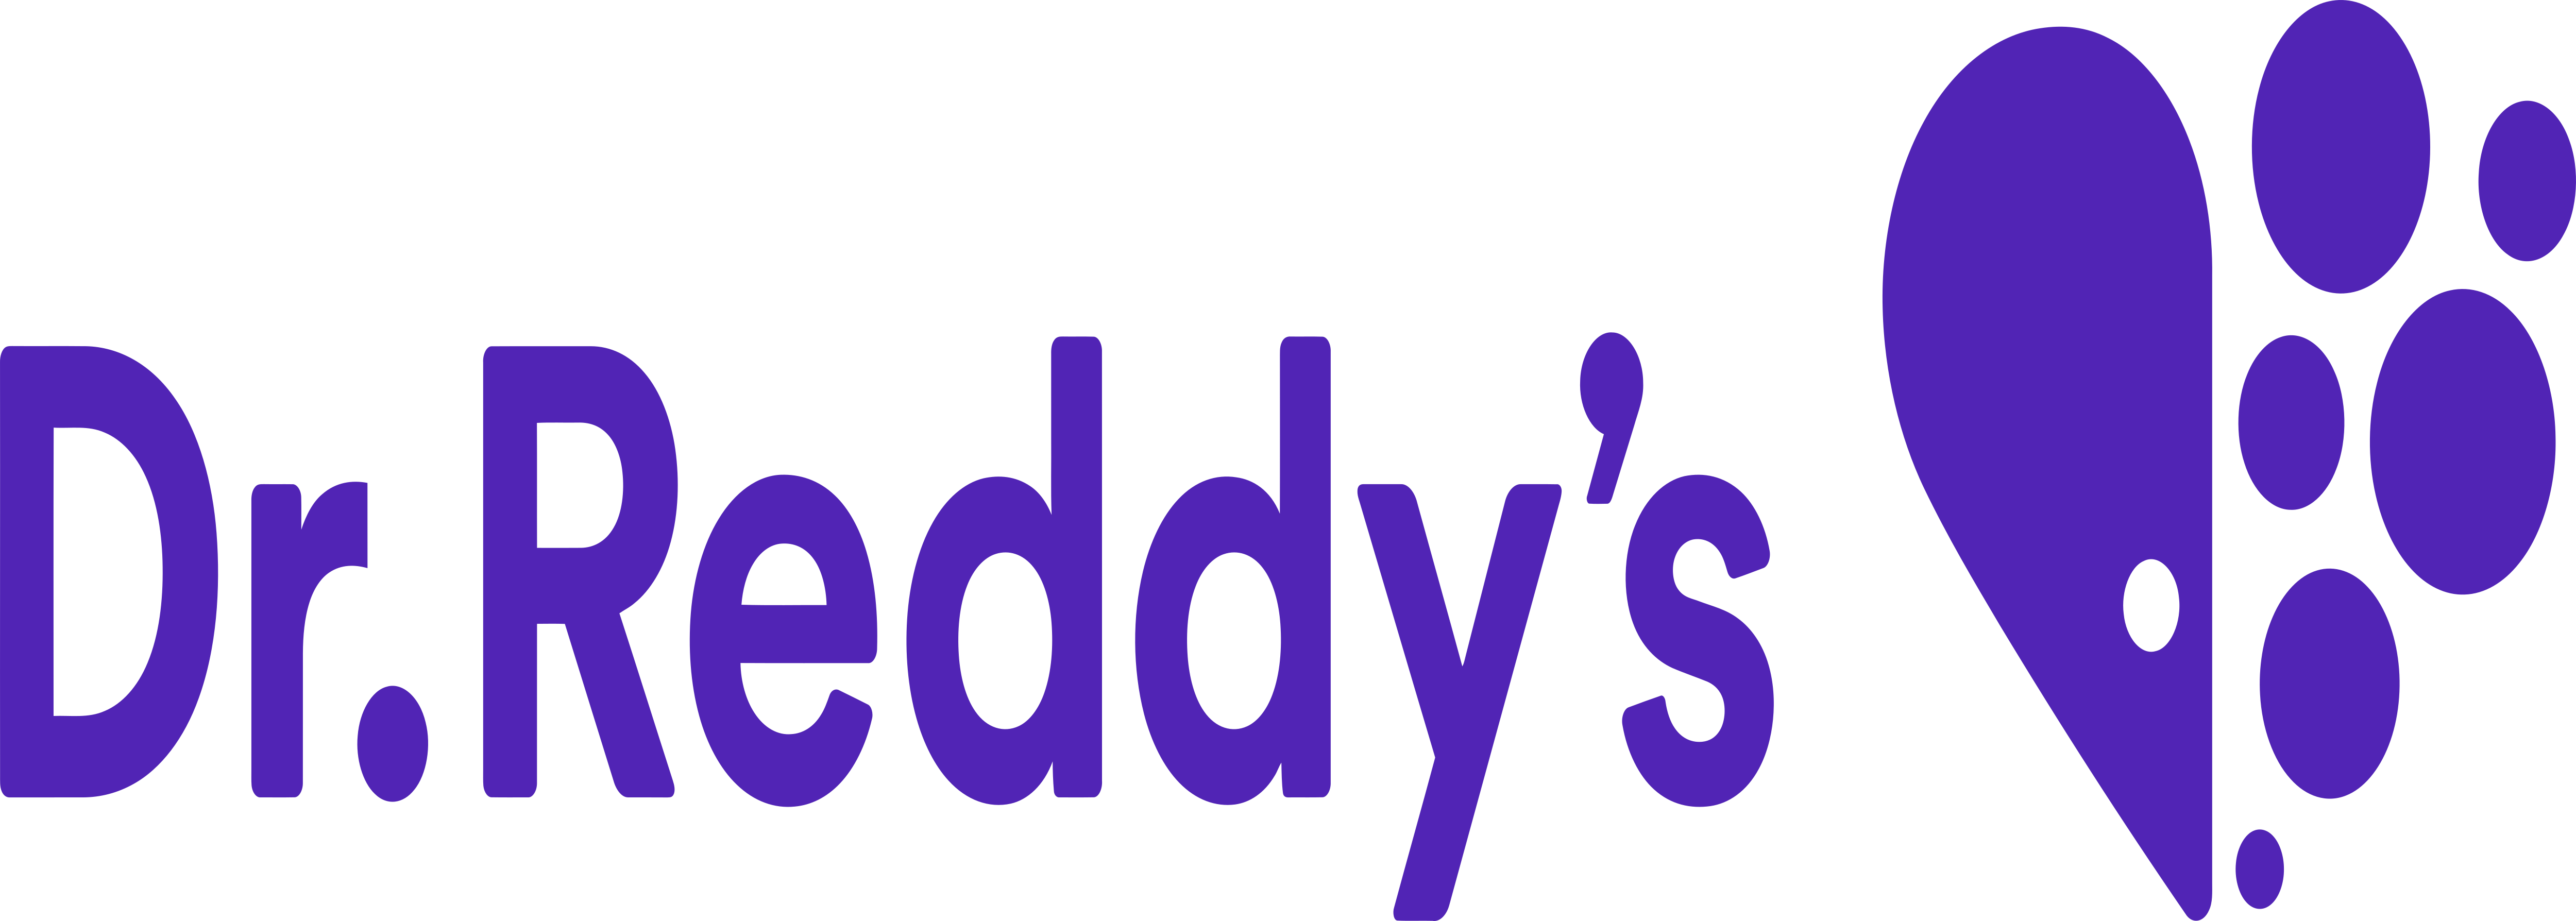 Др реддис. Доктор Реддис. Др Реддис логотип. Компания Dr. Reddy’s Laboratories. Доктор Реддис Лабораторис.